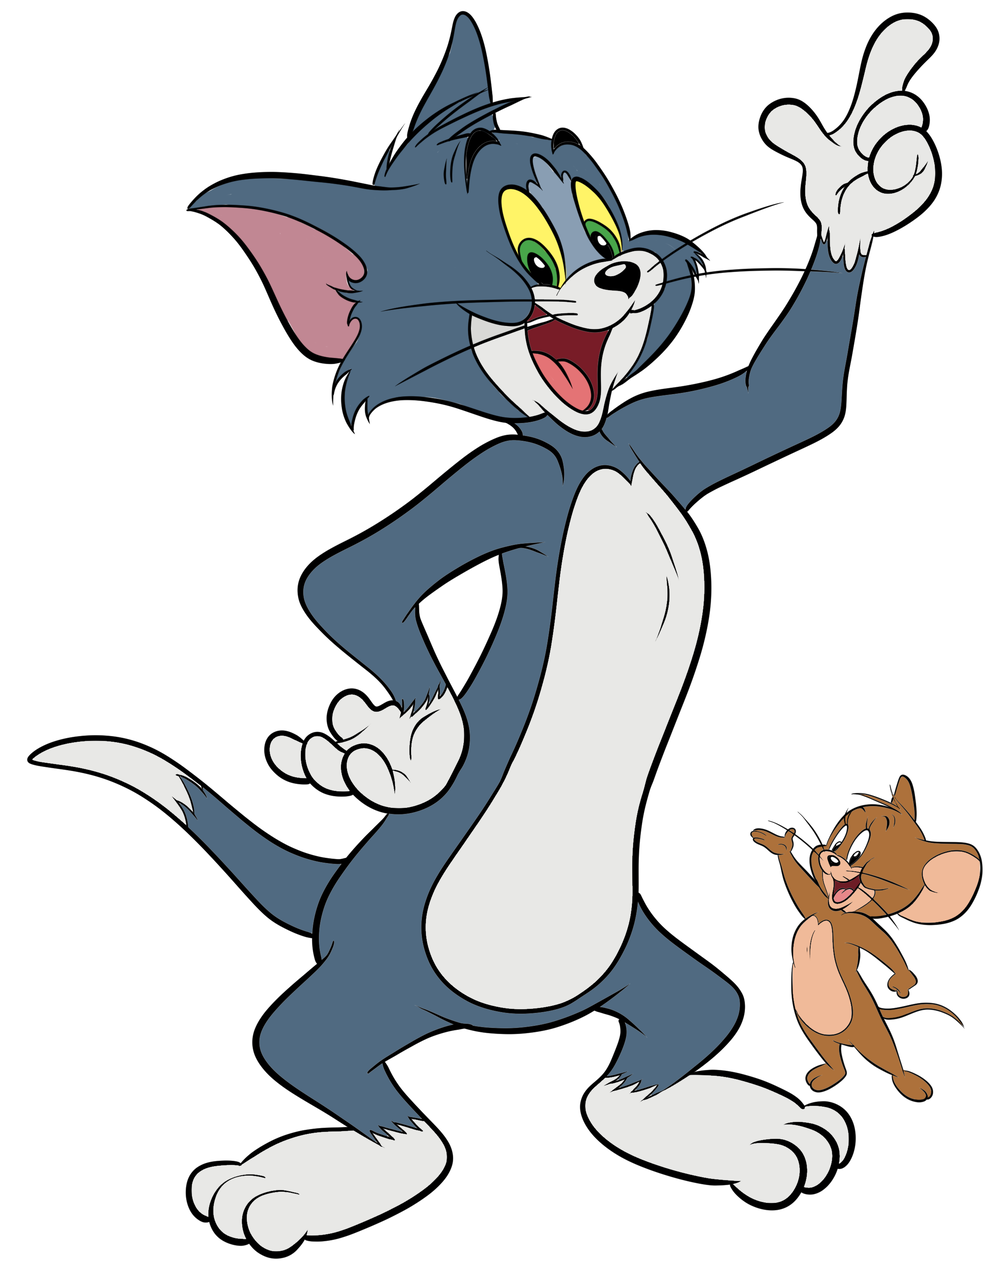 Tom ja Jerry